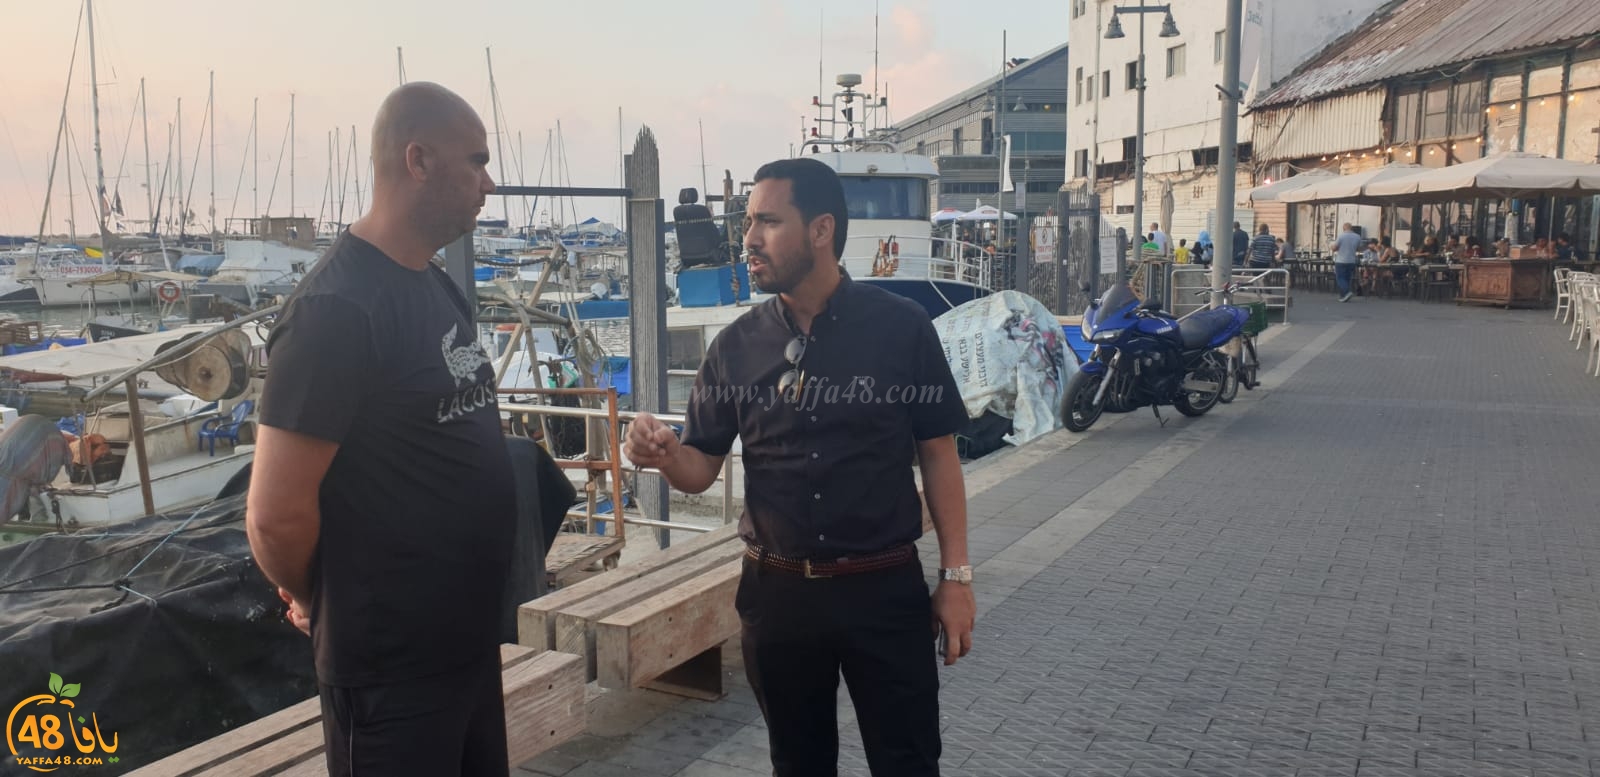  فيديو: اجتماع مع الصيادين لبحث مشاريع التطوير في ميناء يافا 